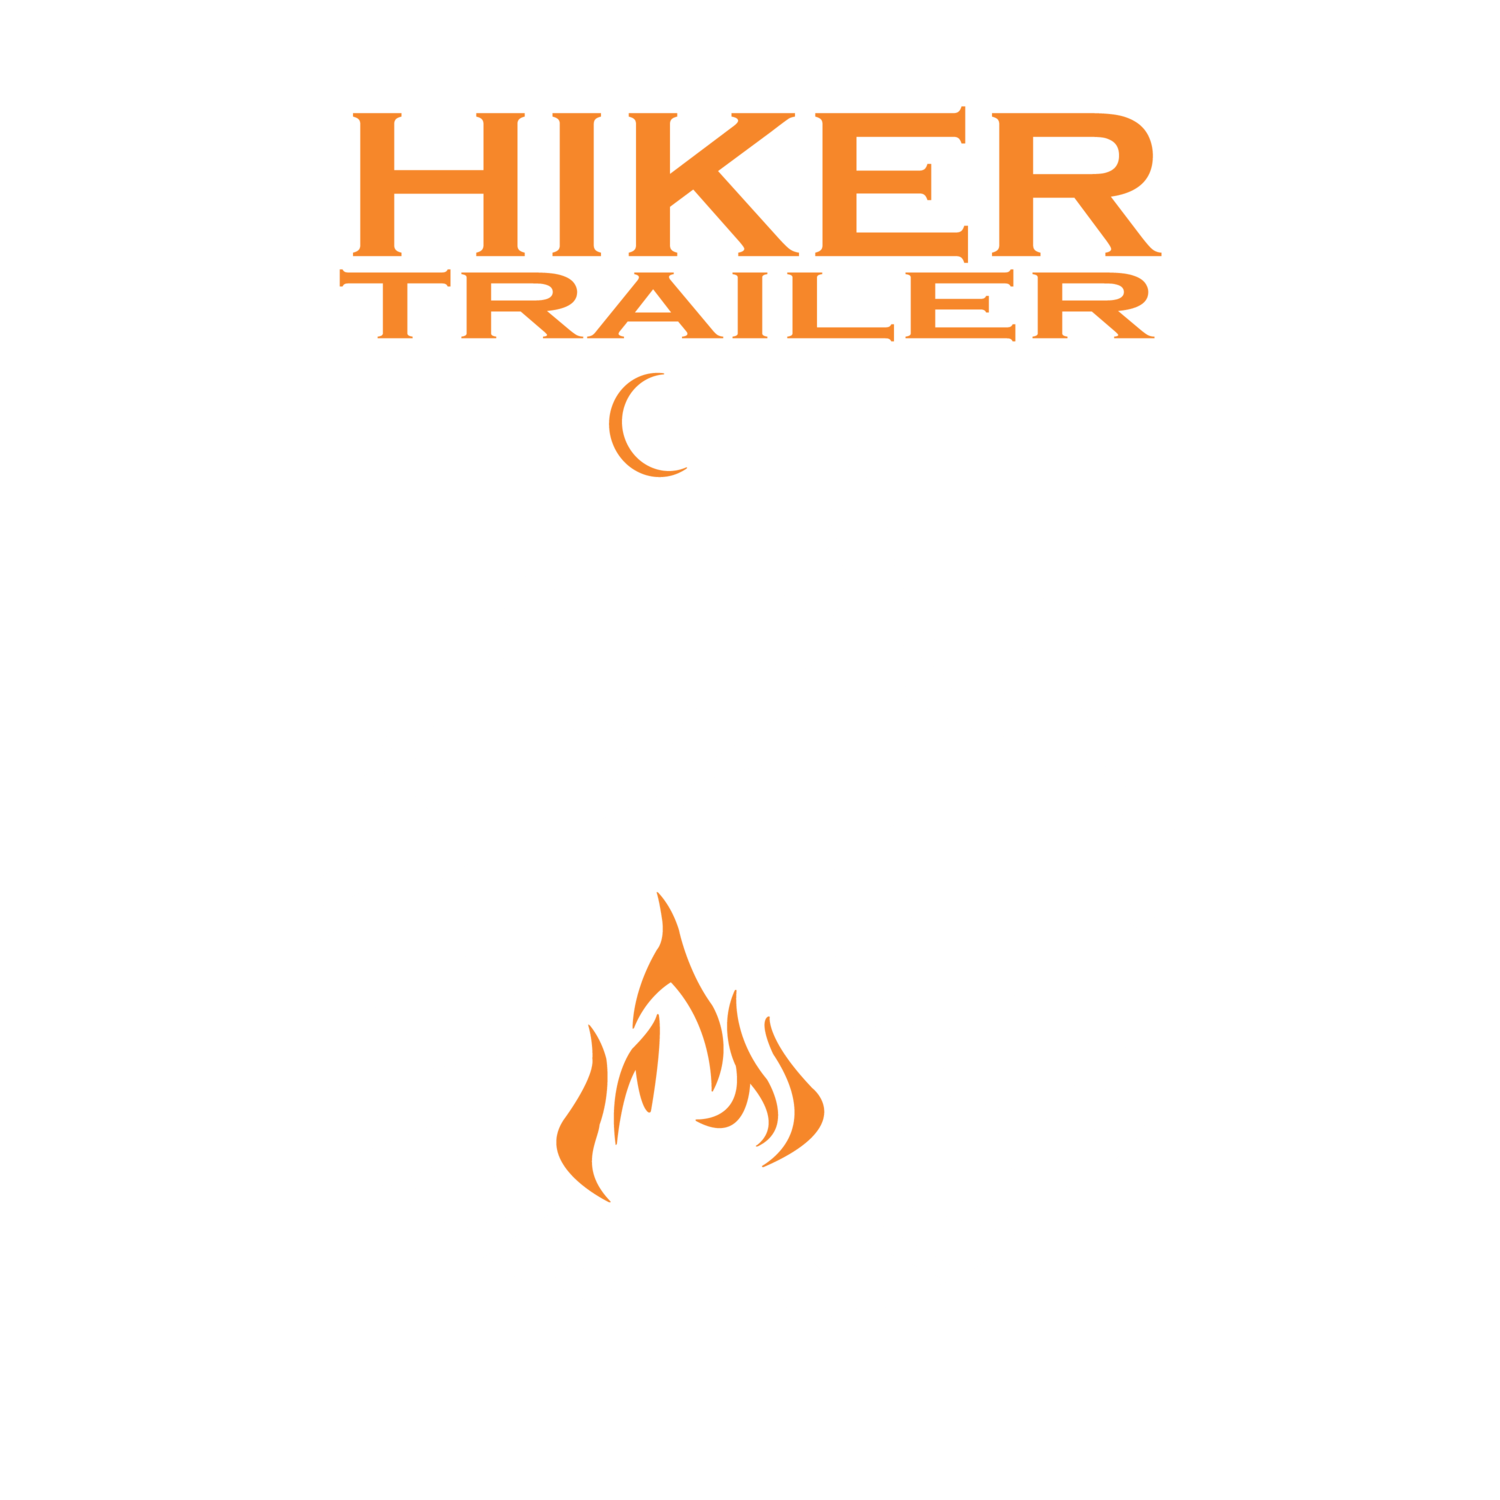 Red Teardrop Company Logo - Hiker Trailer